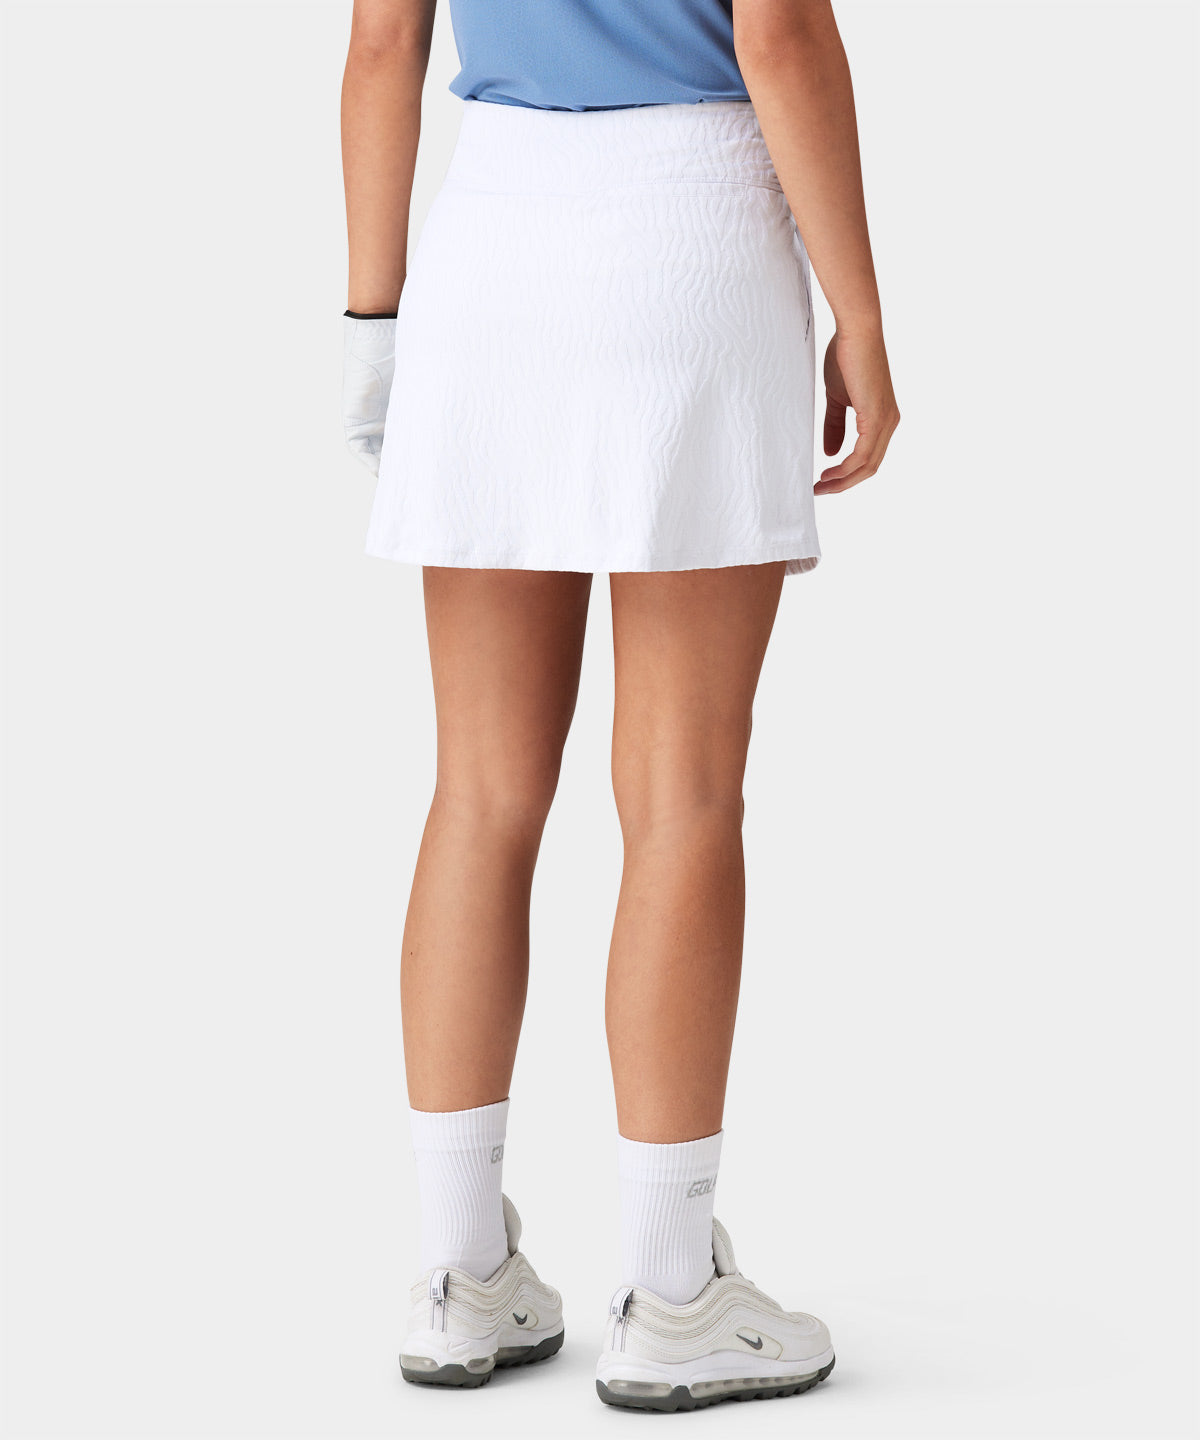 Rori White Performance Skirt